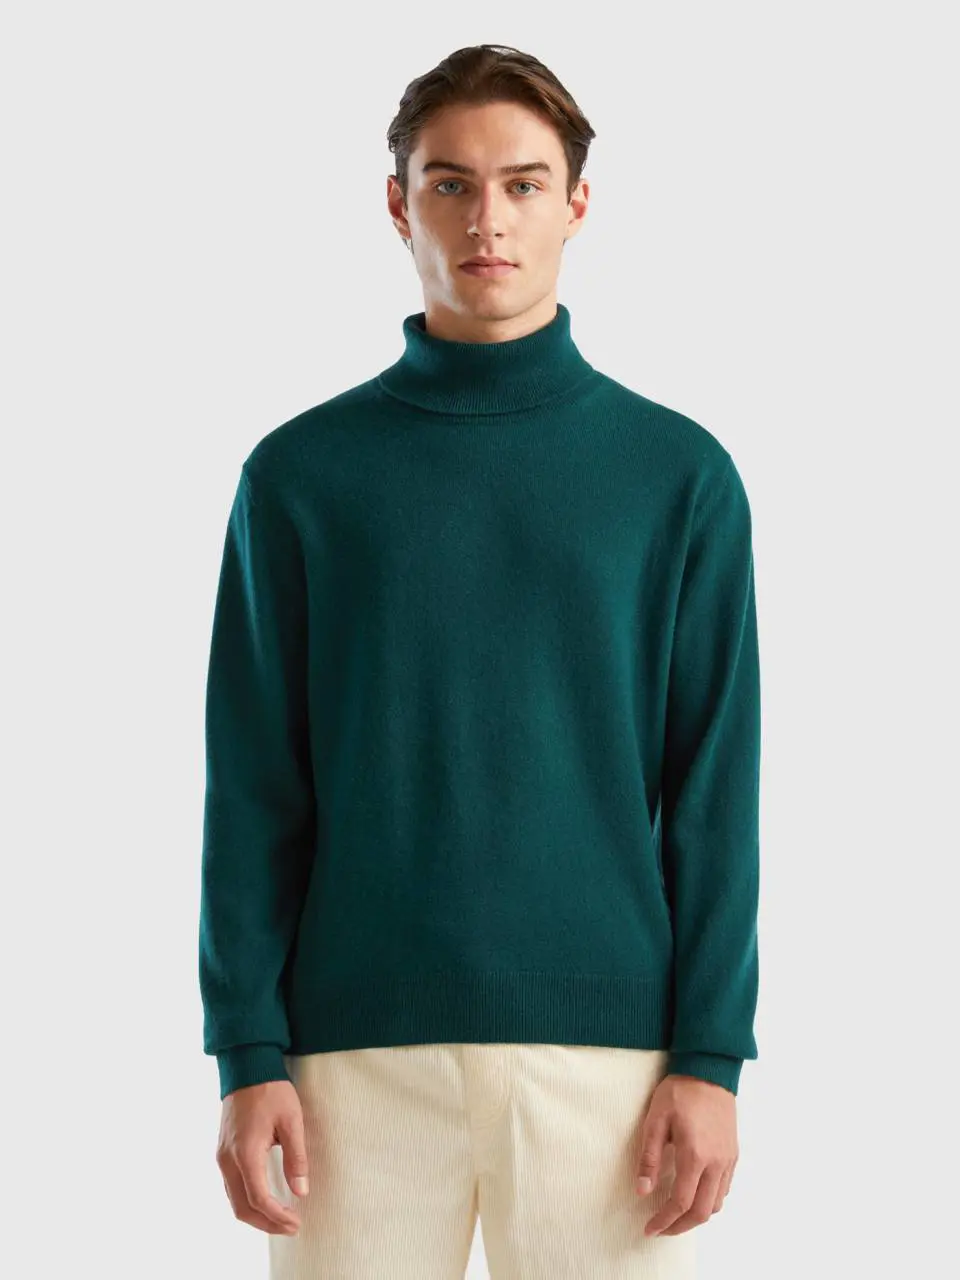 Benetton dark green turtleneck in pure cashmere. 1